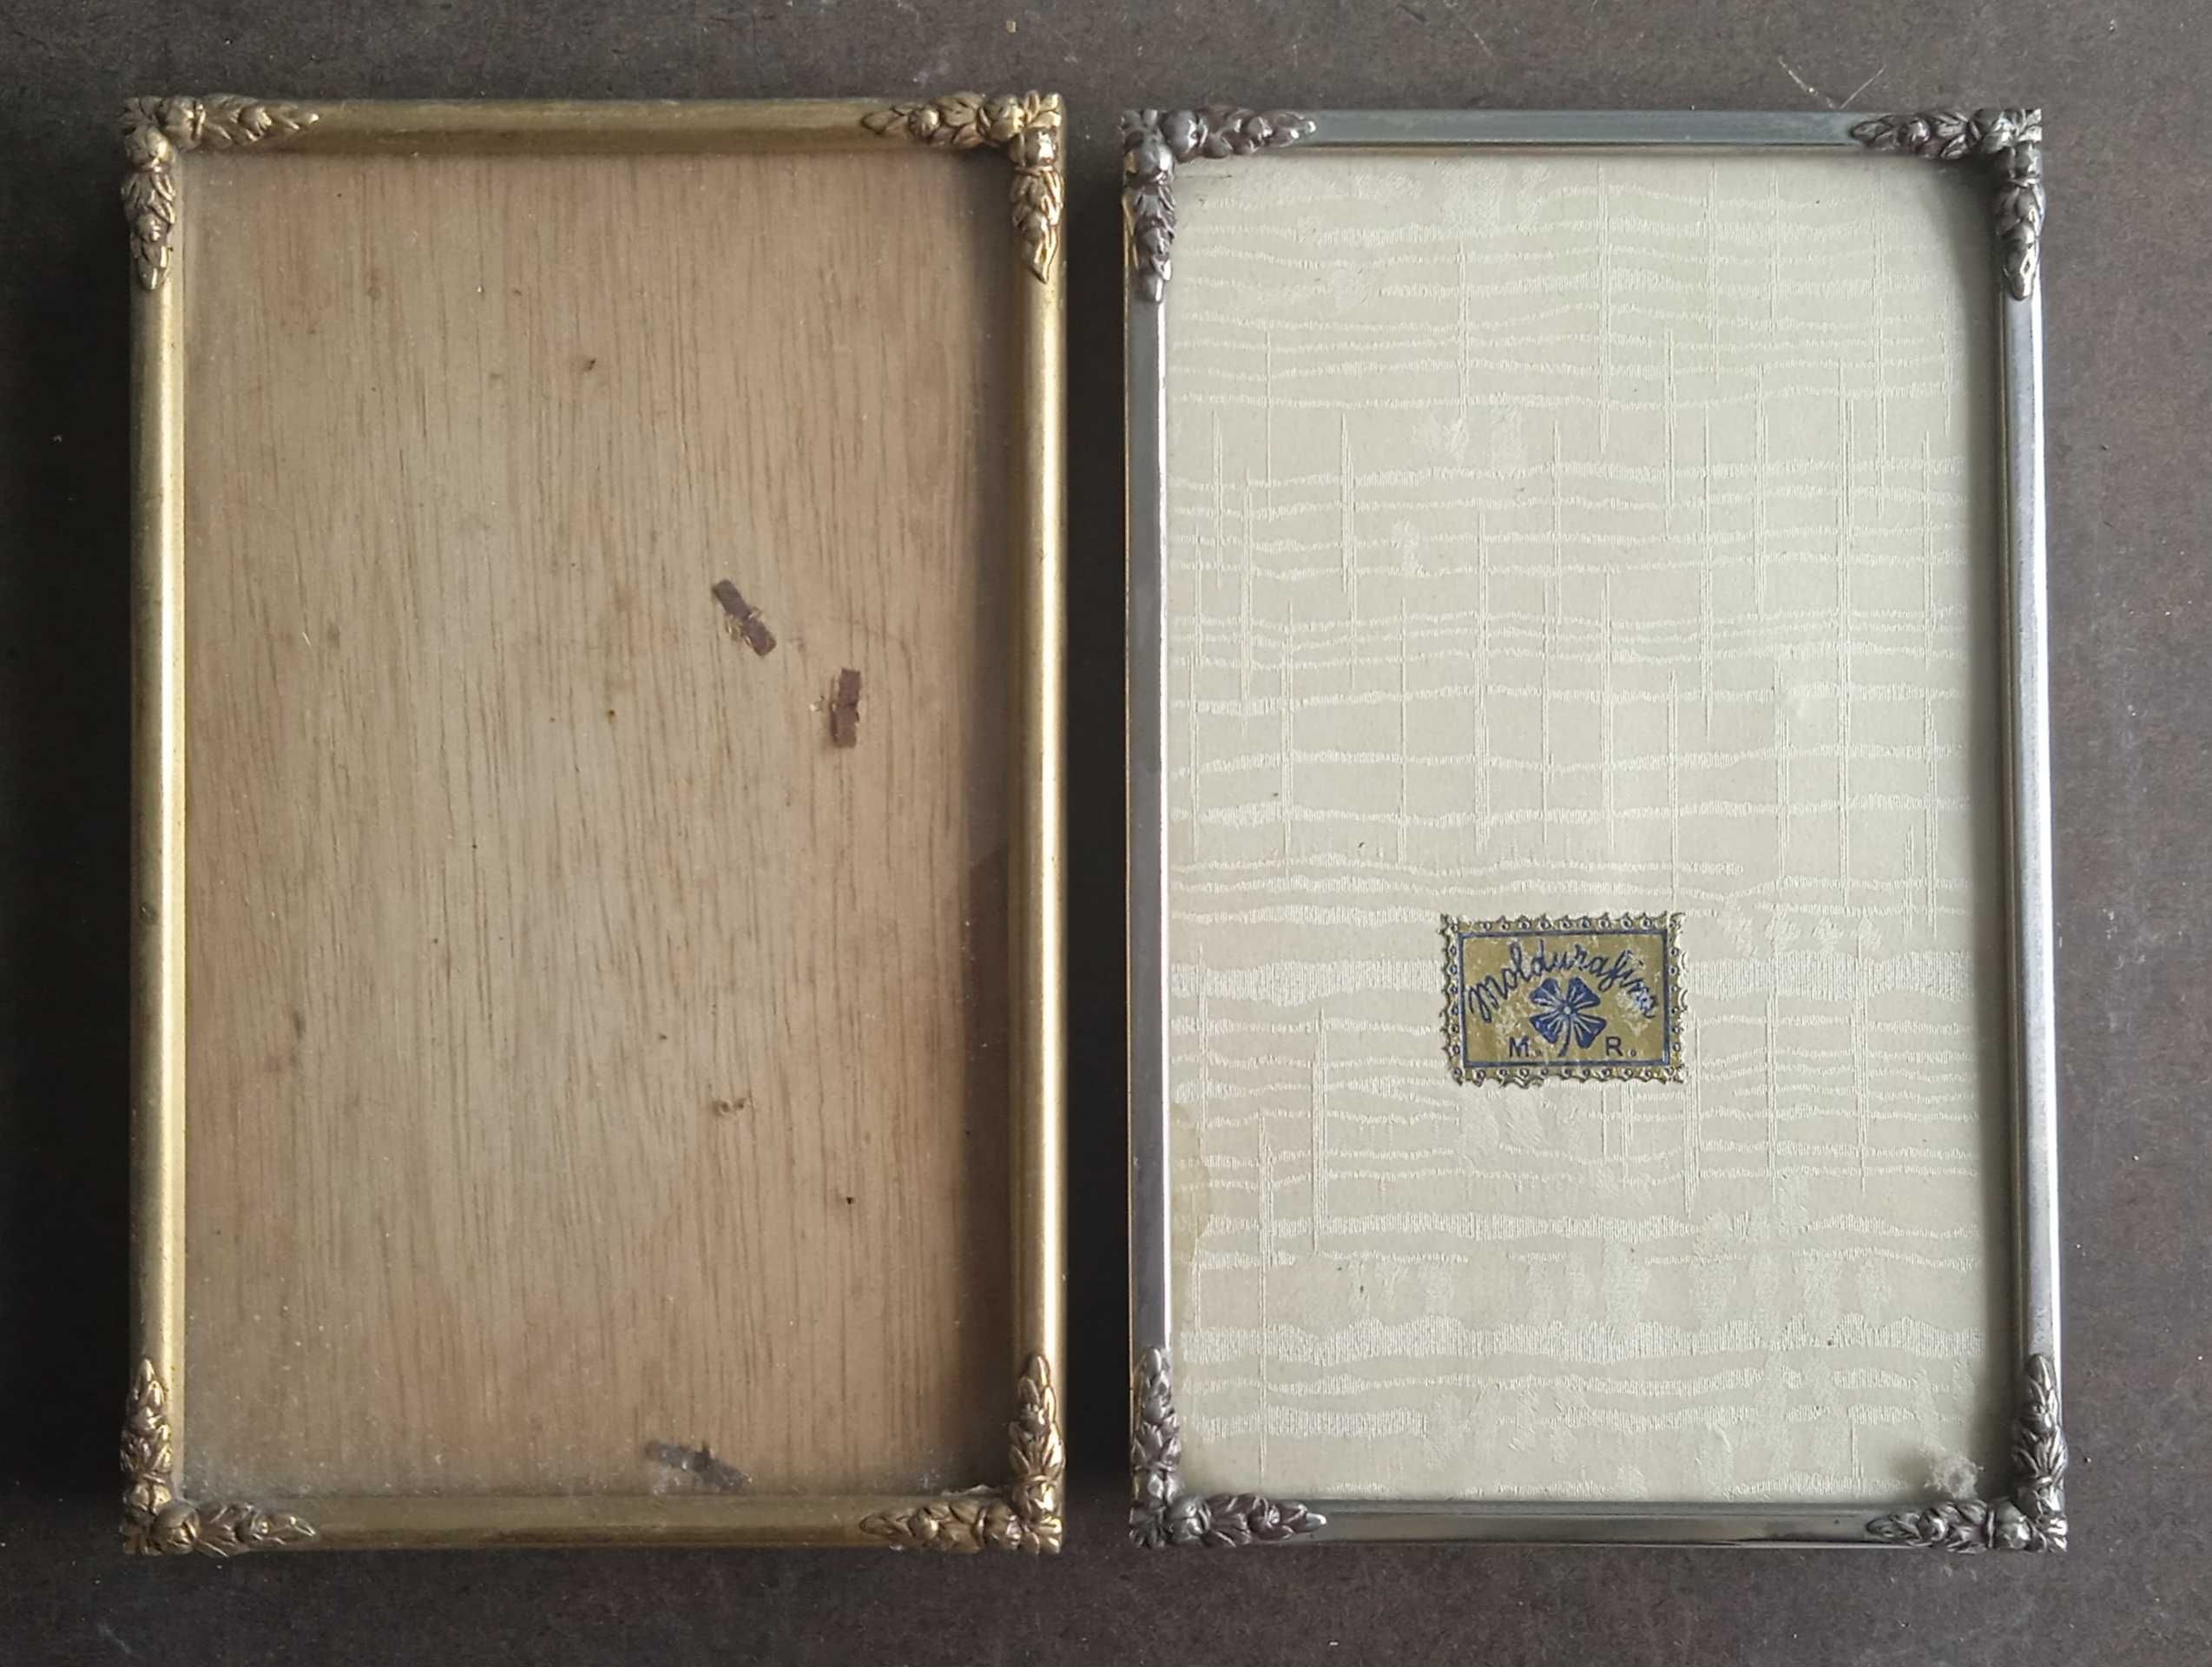 Duas molduras antigas de mesa com selo raro da moldurafina M.R.